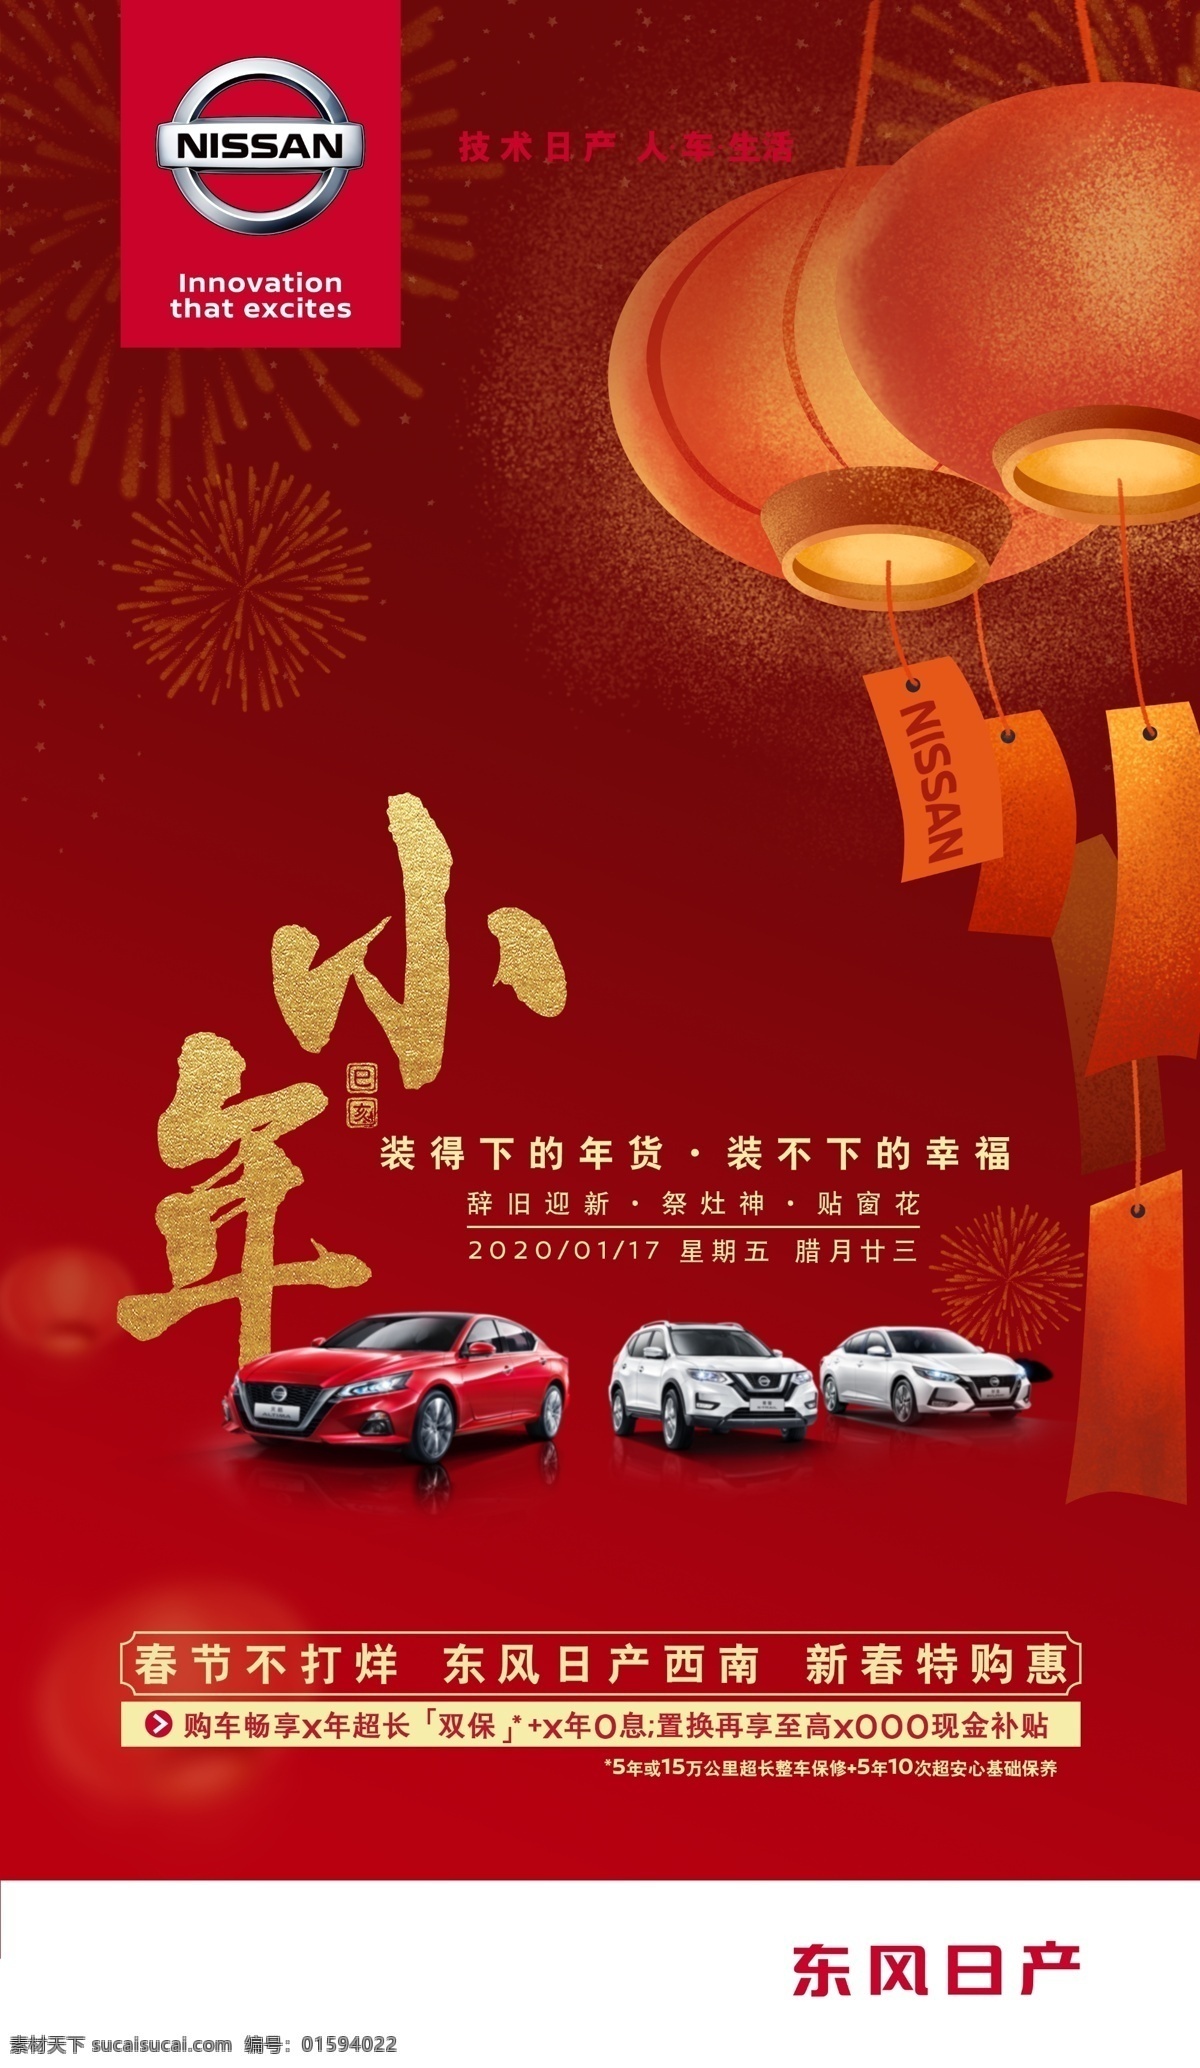 小年图片 小年 喜庆 庆祝 烟花 红灯笼 东风日产 汽车 红色背景 h5宣传图 新年 日产汽车广告